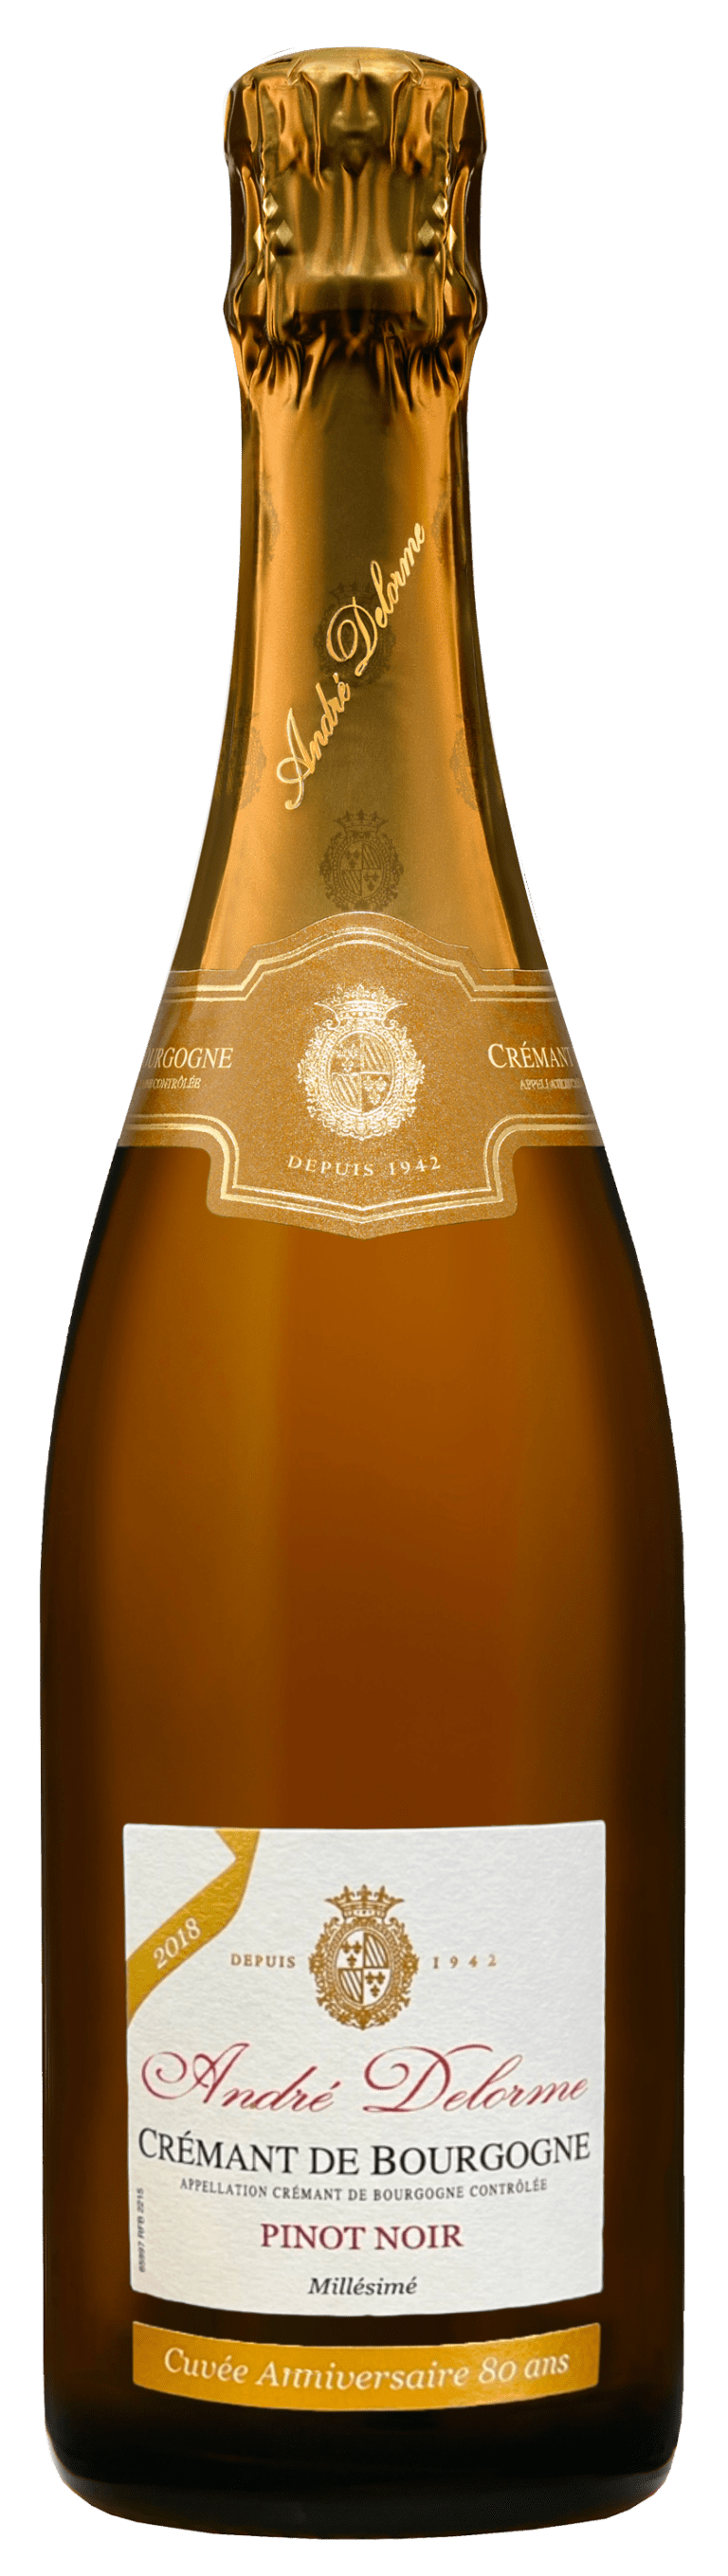 Crémant de Bourgogne André Delorme Blanc des Noirs Brut 100% Pinot Noir 2018 - Cuvée Anniversaire 80 Ans - Edition Limité - Vin de Bourgogne